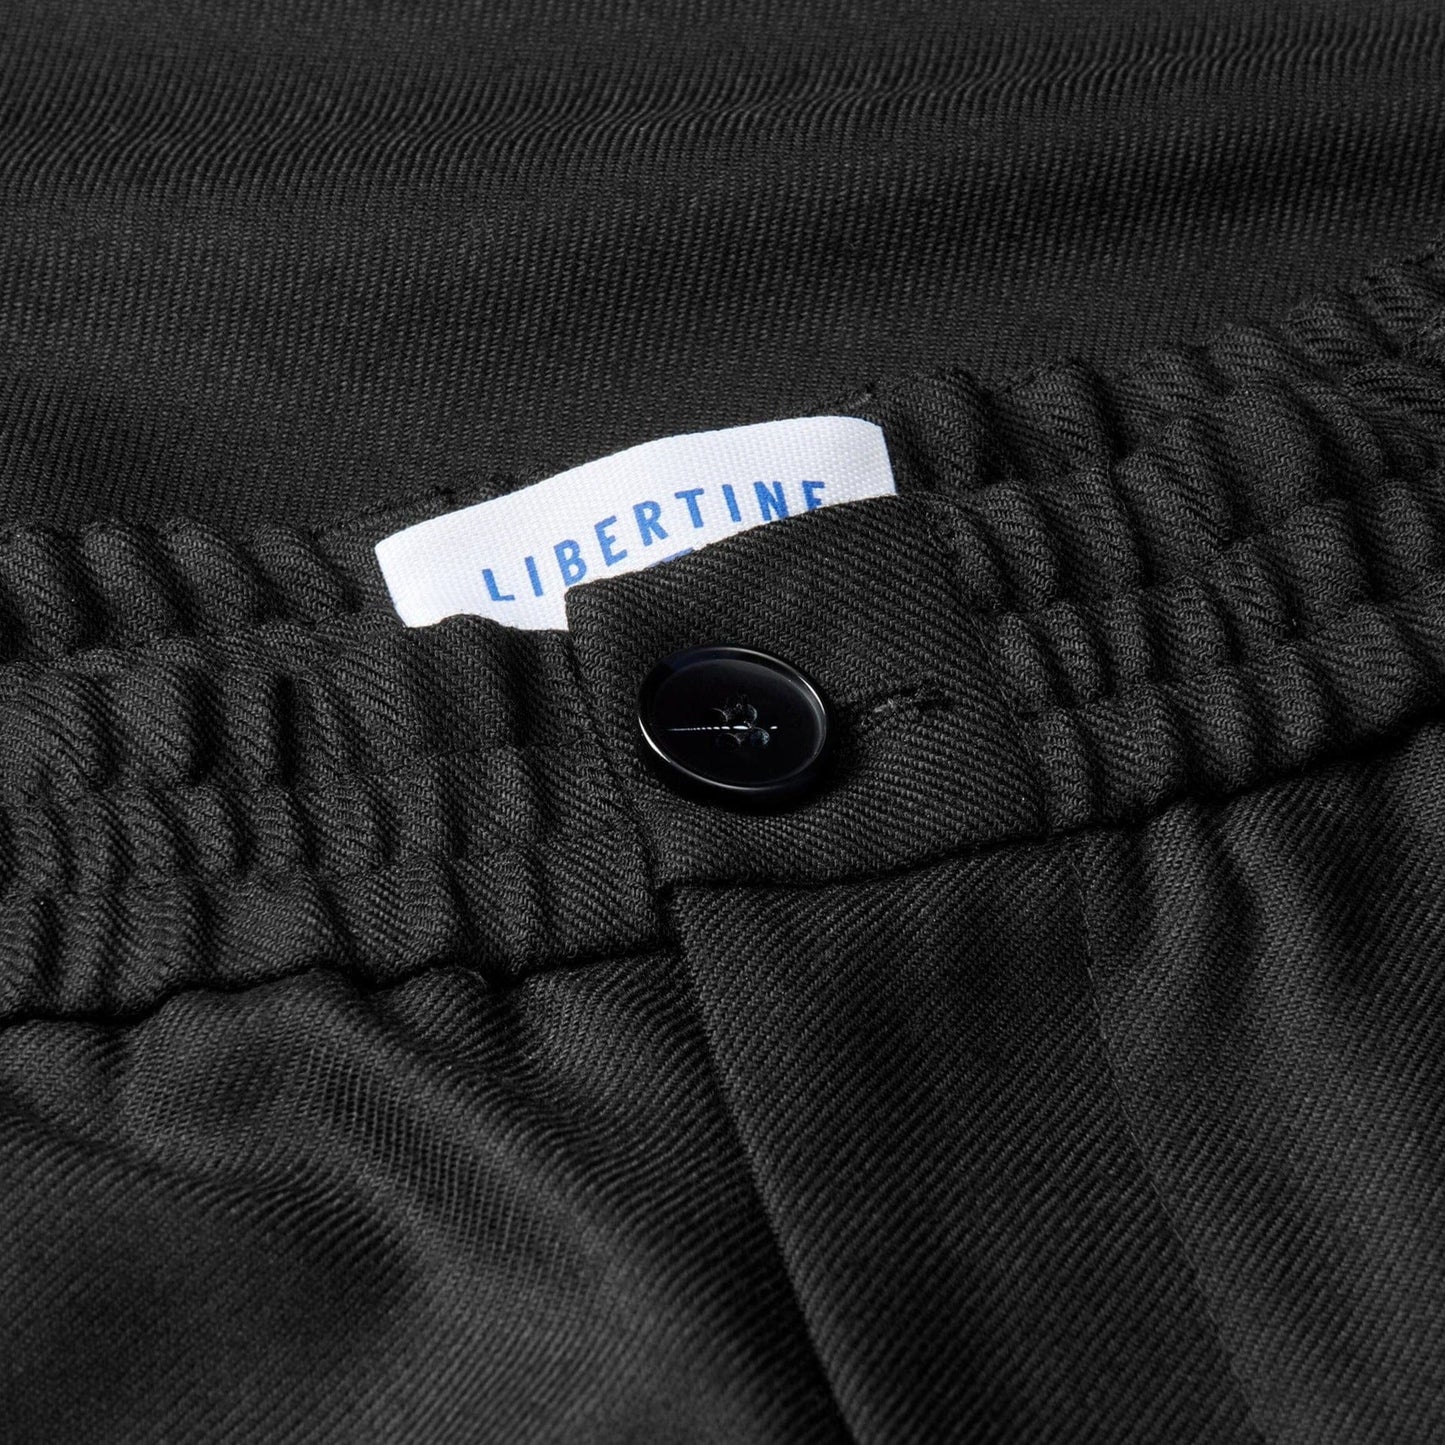 Libertine-Libertine Wool Smoke Pants - Black Pants Libertine-Libertine 